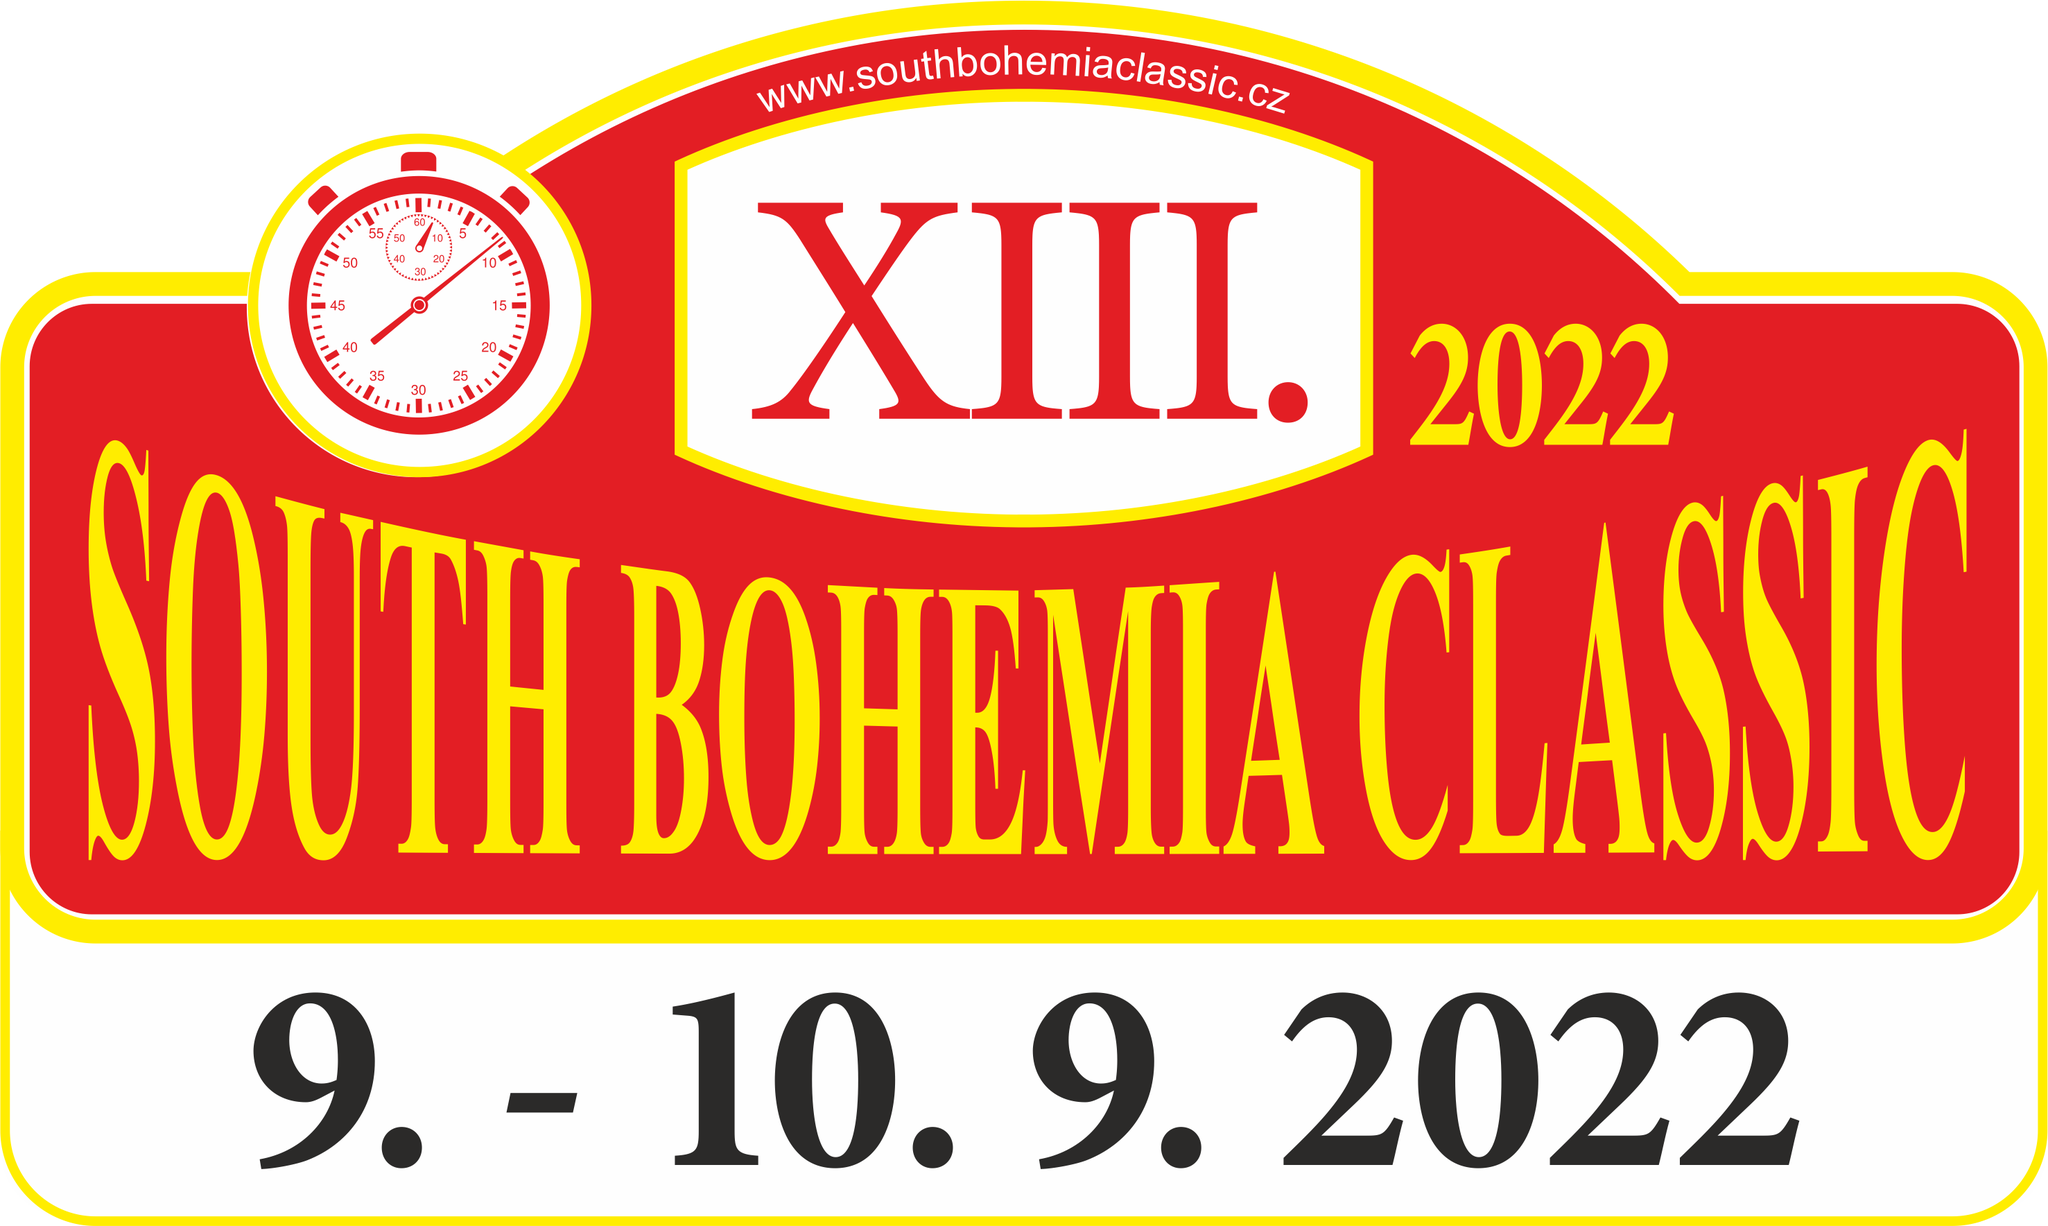 XIII. 2022 SOUTH BOHEMIA CLASSIC